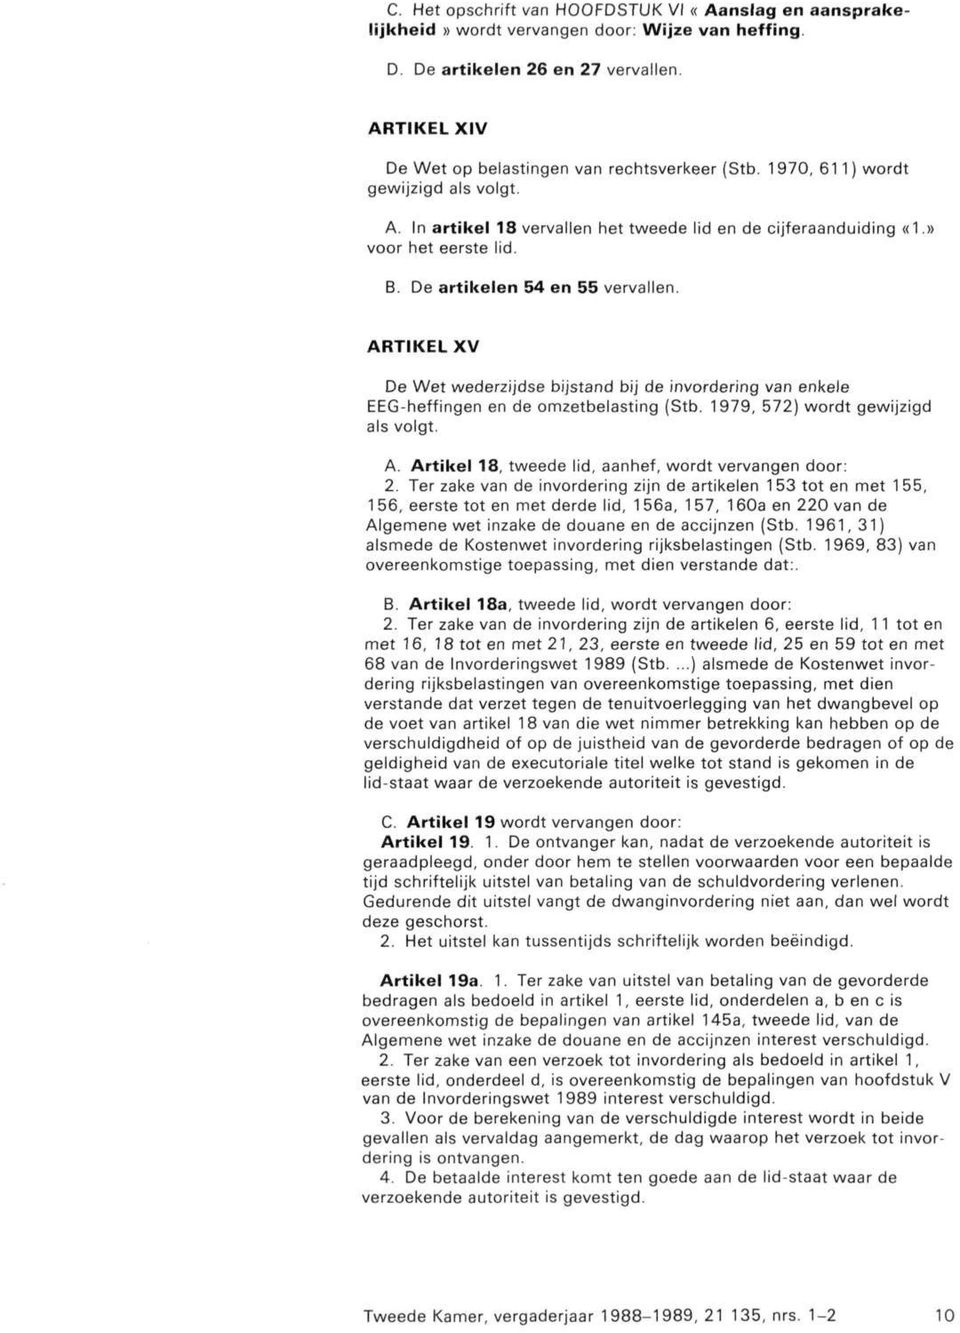 ARTIKEL XV De Wet wederzijdse bijstand bij de invordering van enkele EEG-heffingen en de omzetbelasting (Stb. 1979, 572) wordt gewijzigd als volgt. A.